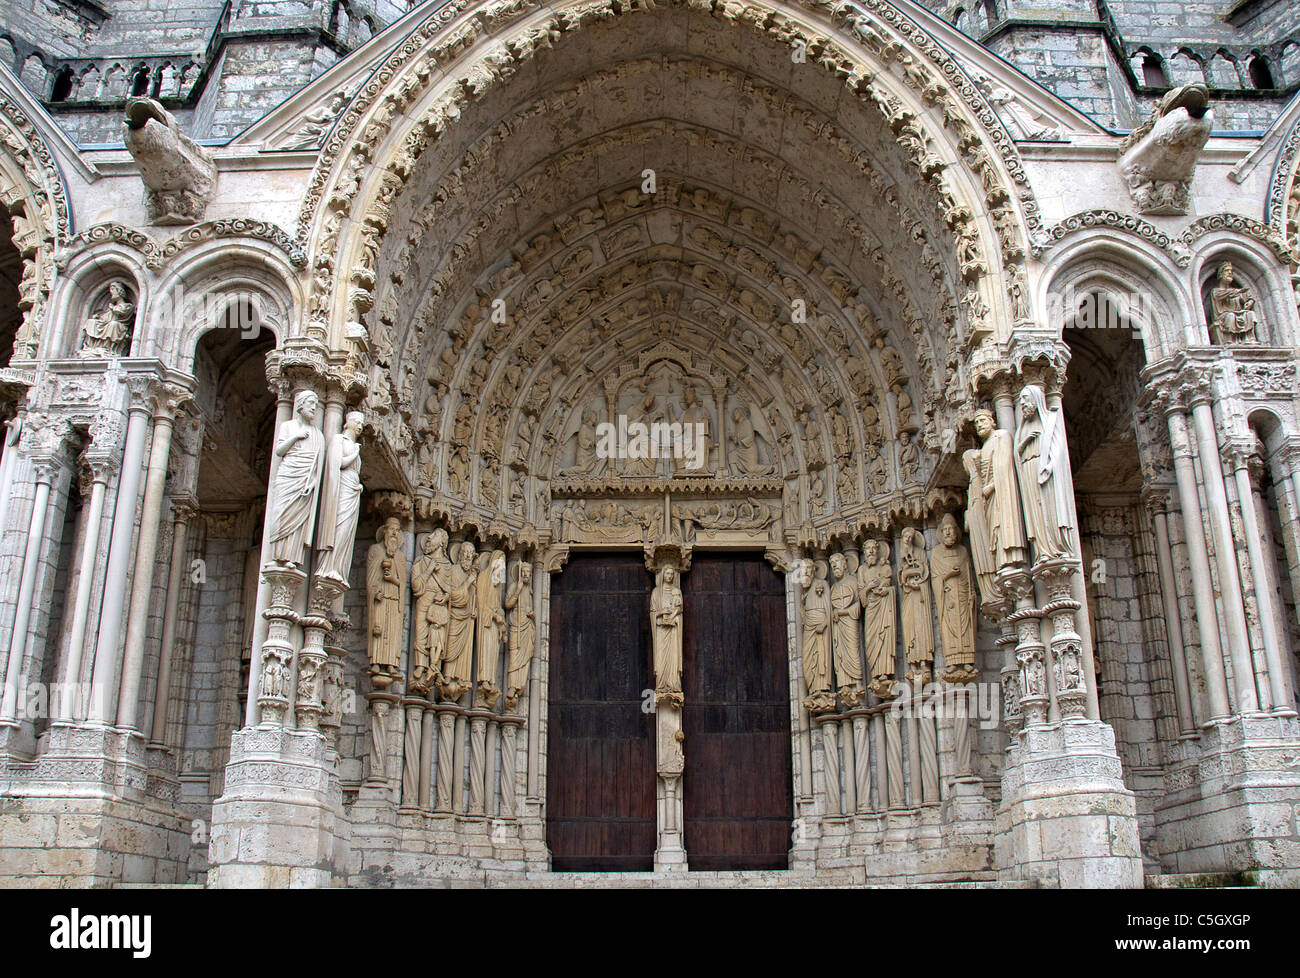 Ornate Portail nord de la cathédrale de Chartres France Banque D'Images